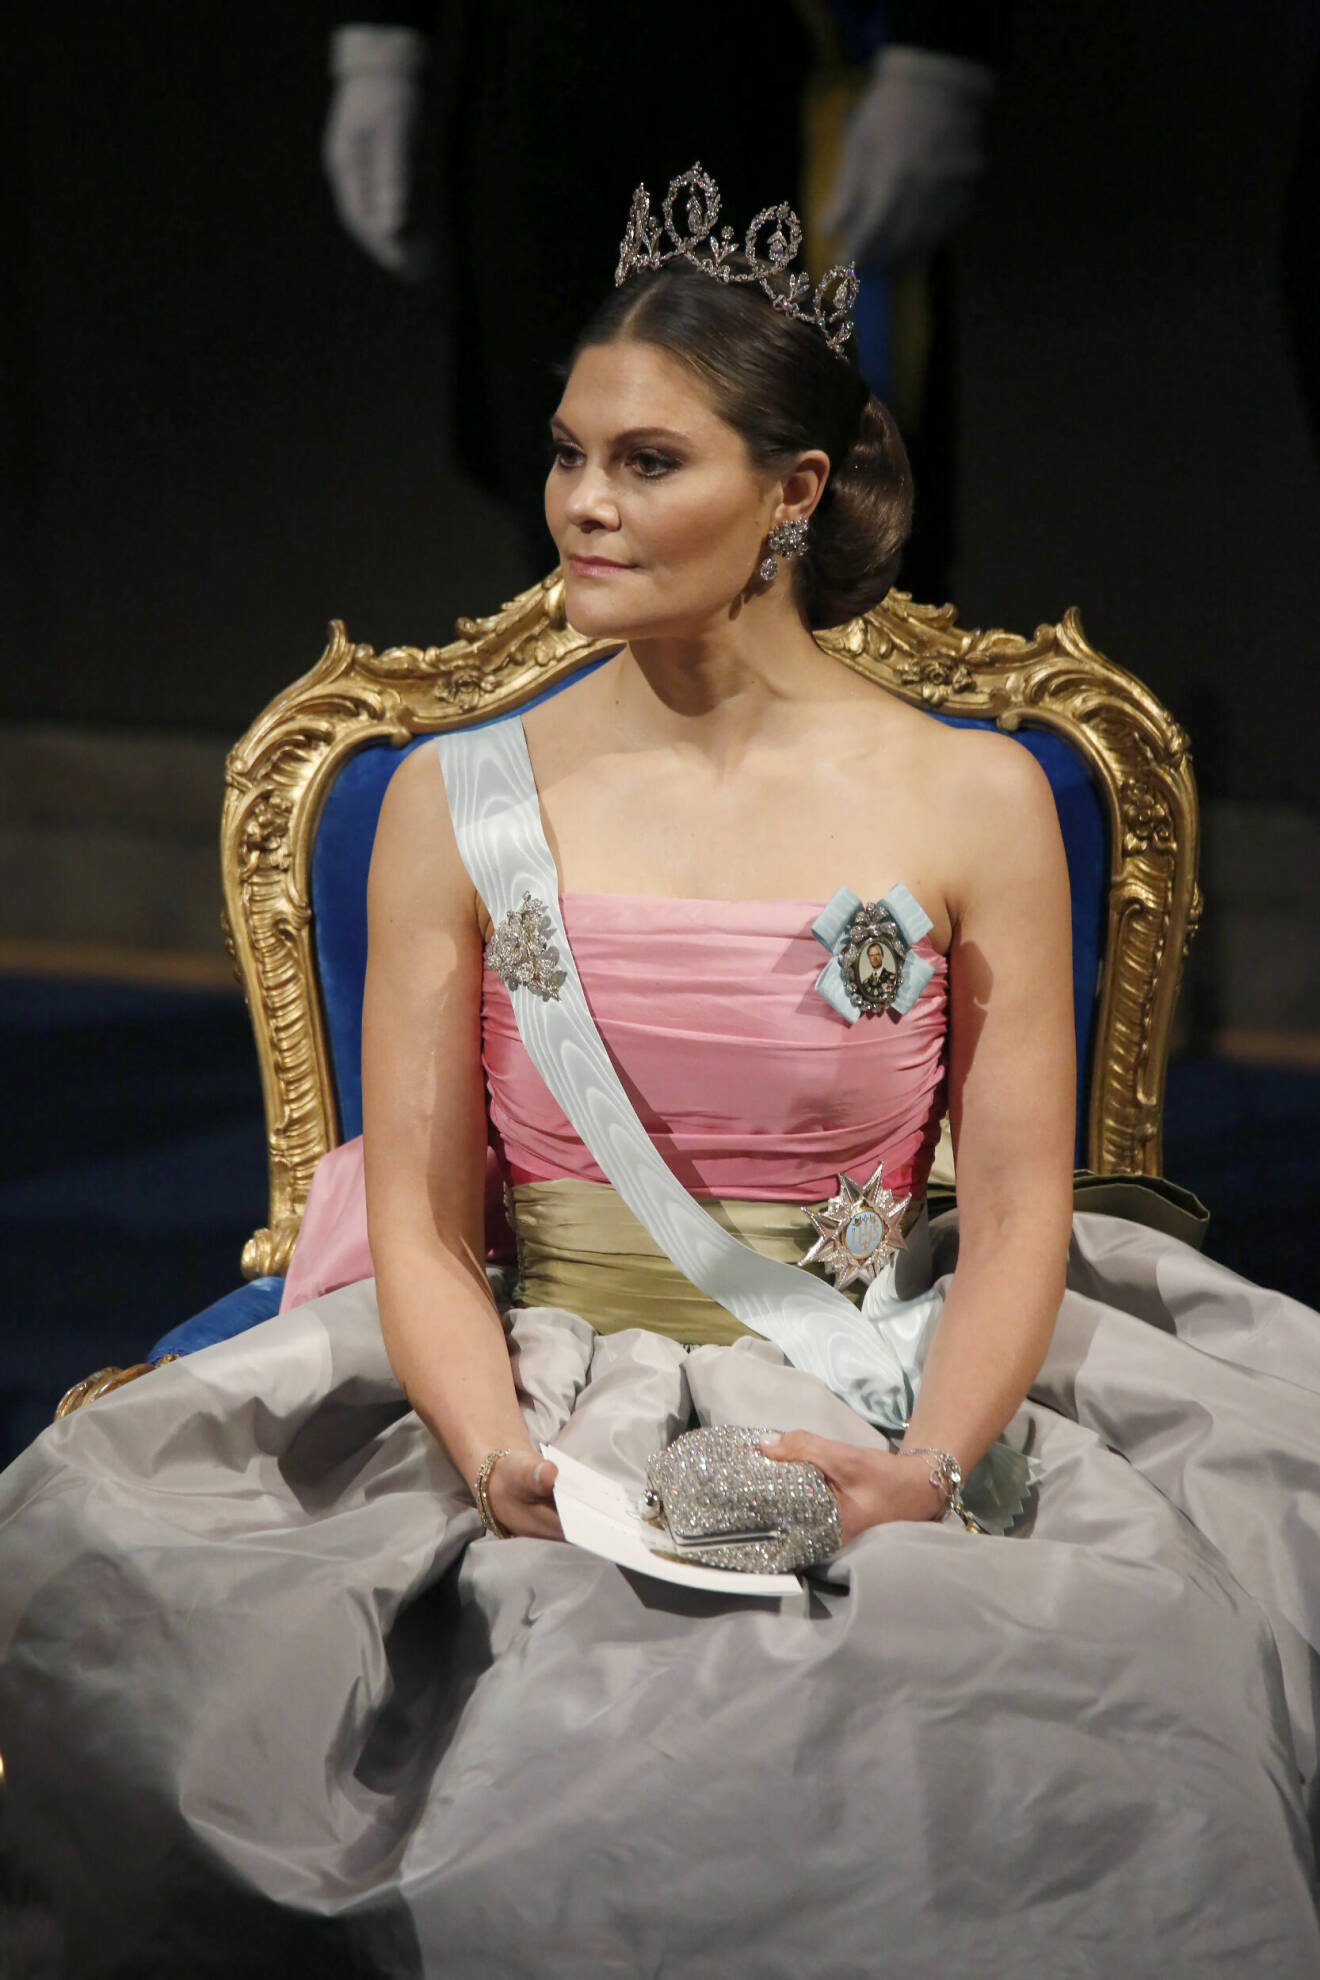 Kronprinsessan Victoria på Nobelfesten 2018